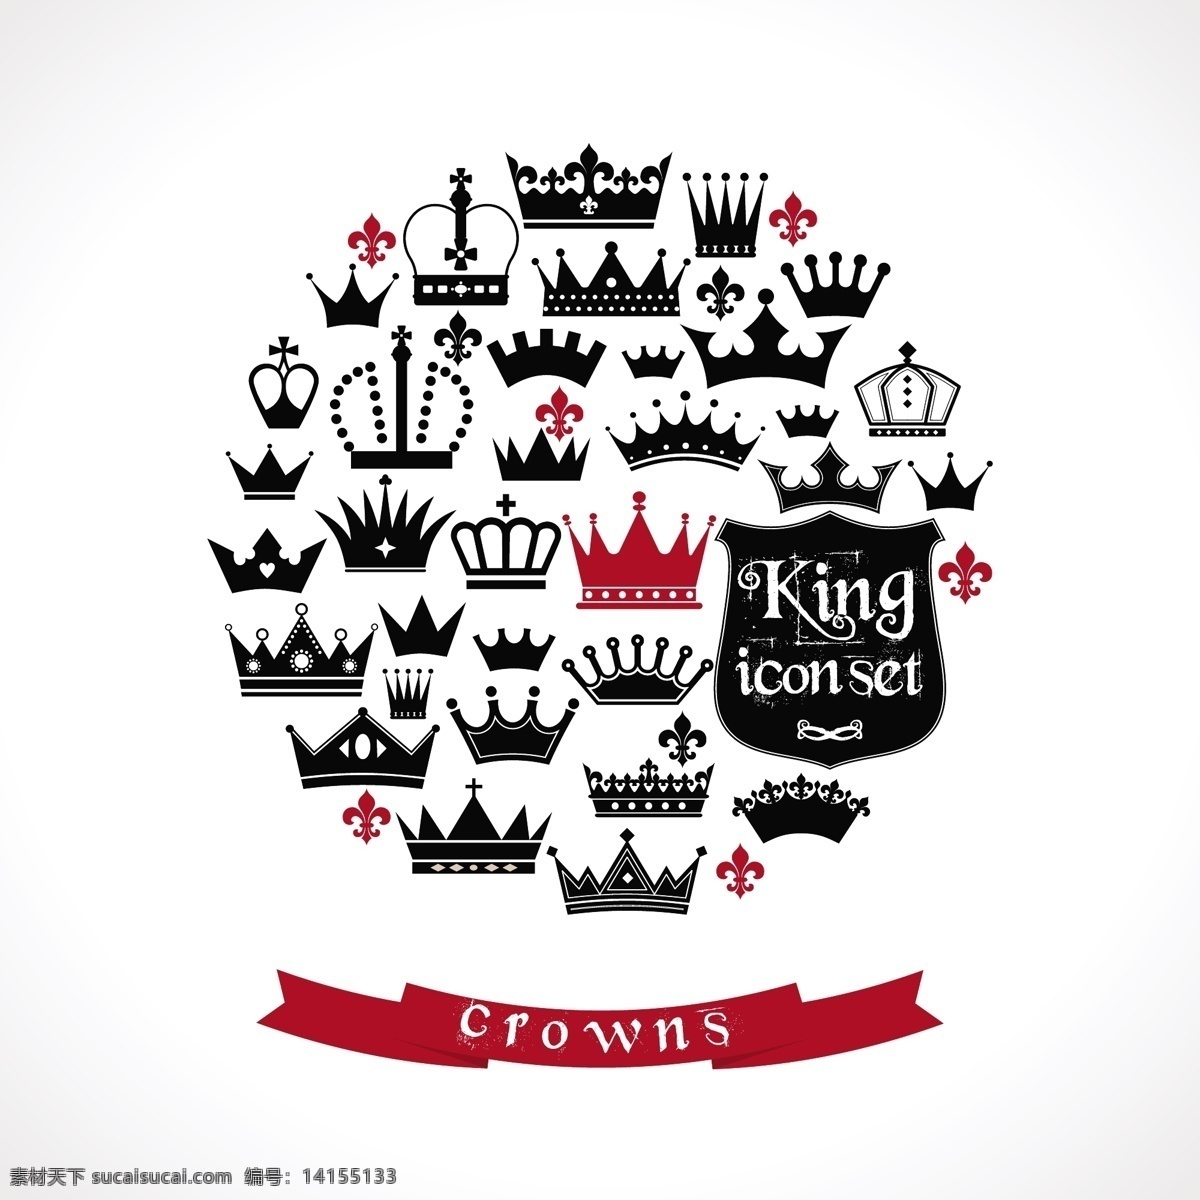 皇冠 皇冠标志 矢量皇冠 头冠 古典皇冠 皇冠饰品 图标边框 标志图标 其他图标